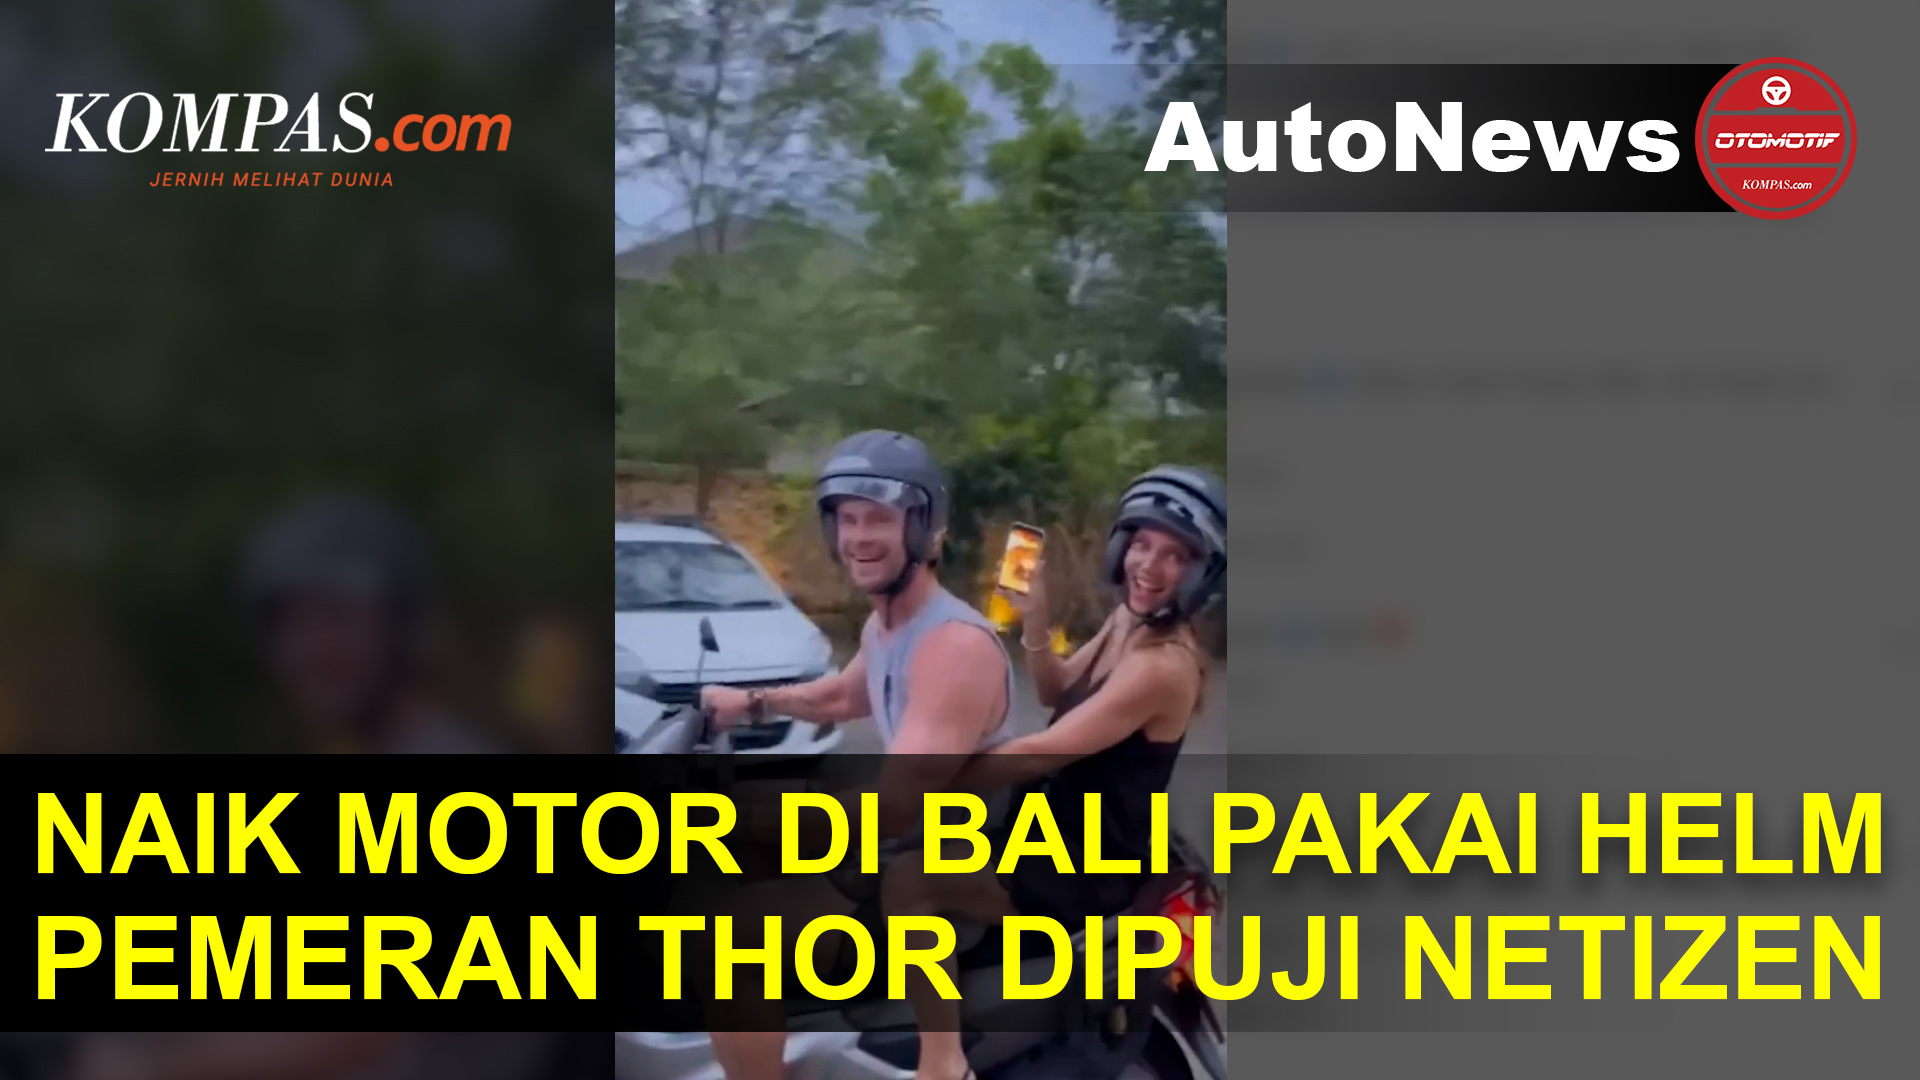 Pemeran Thor Liburan di Bali, Naik Motor Pakai Helm sampai Dipuji Netizen